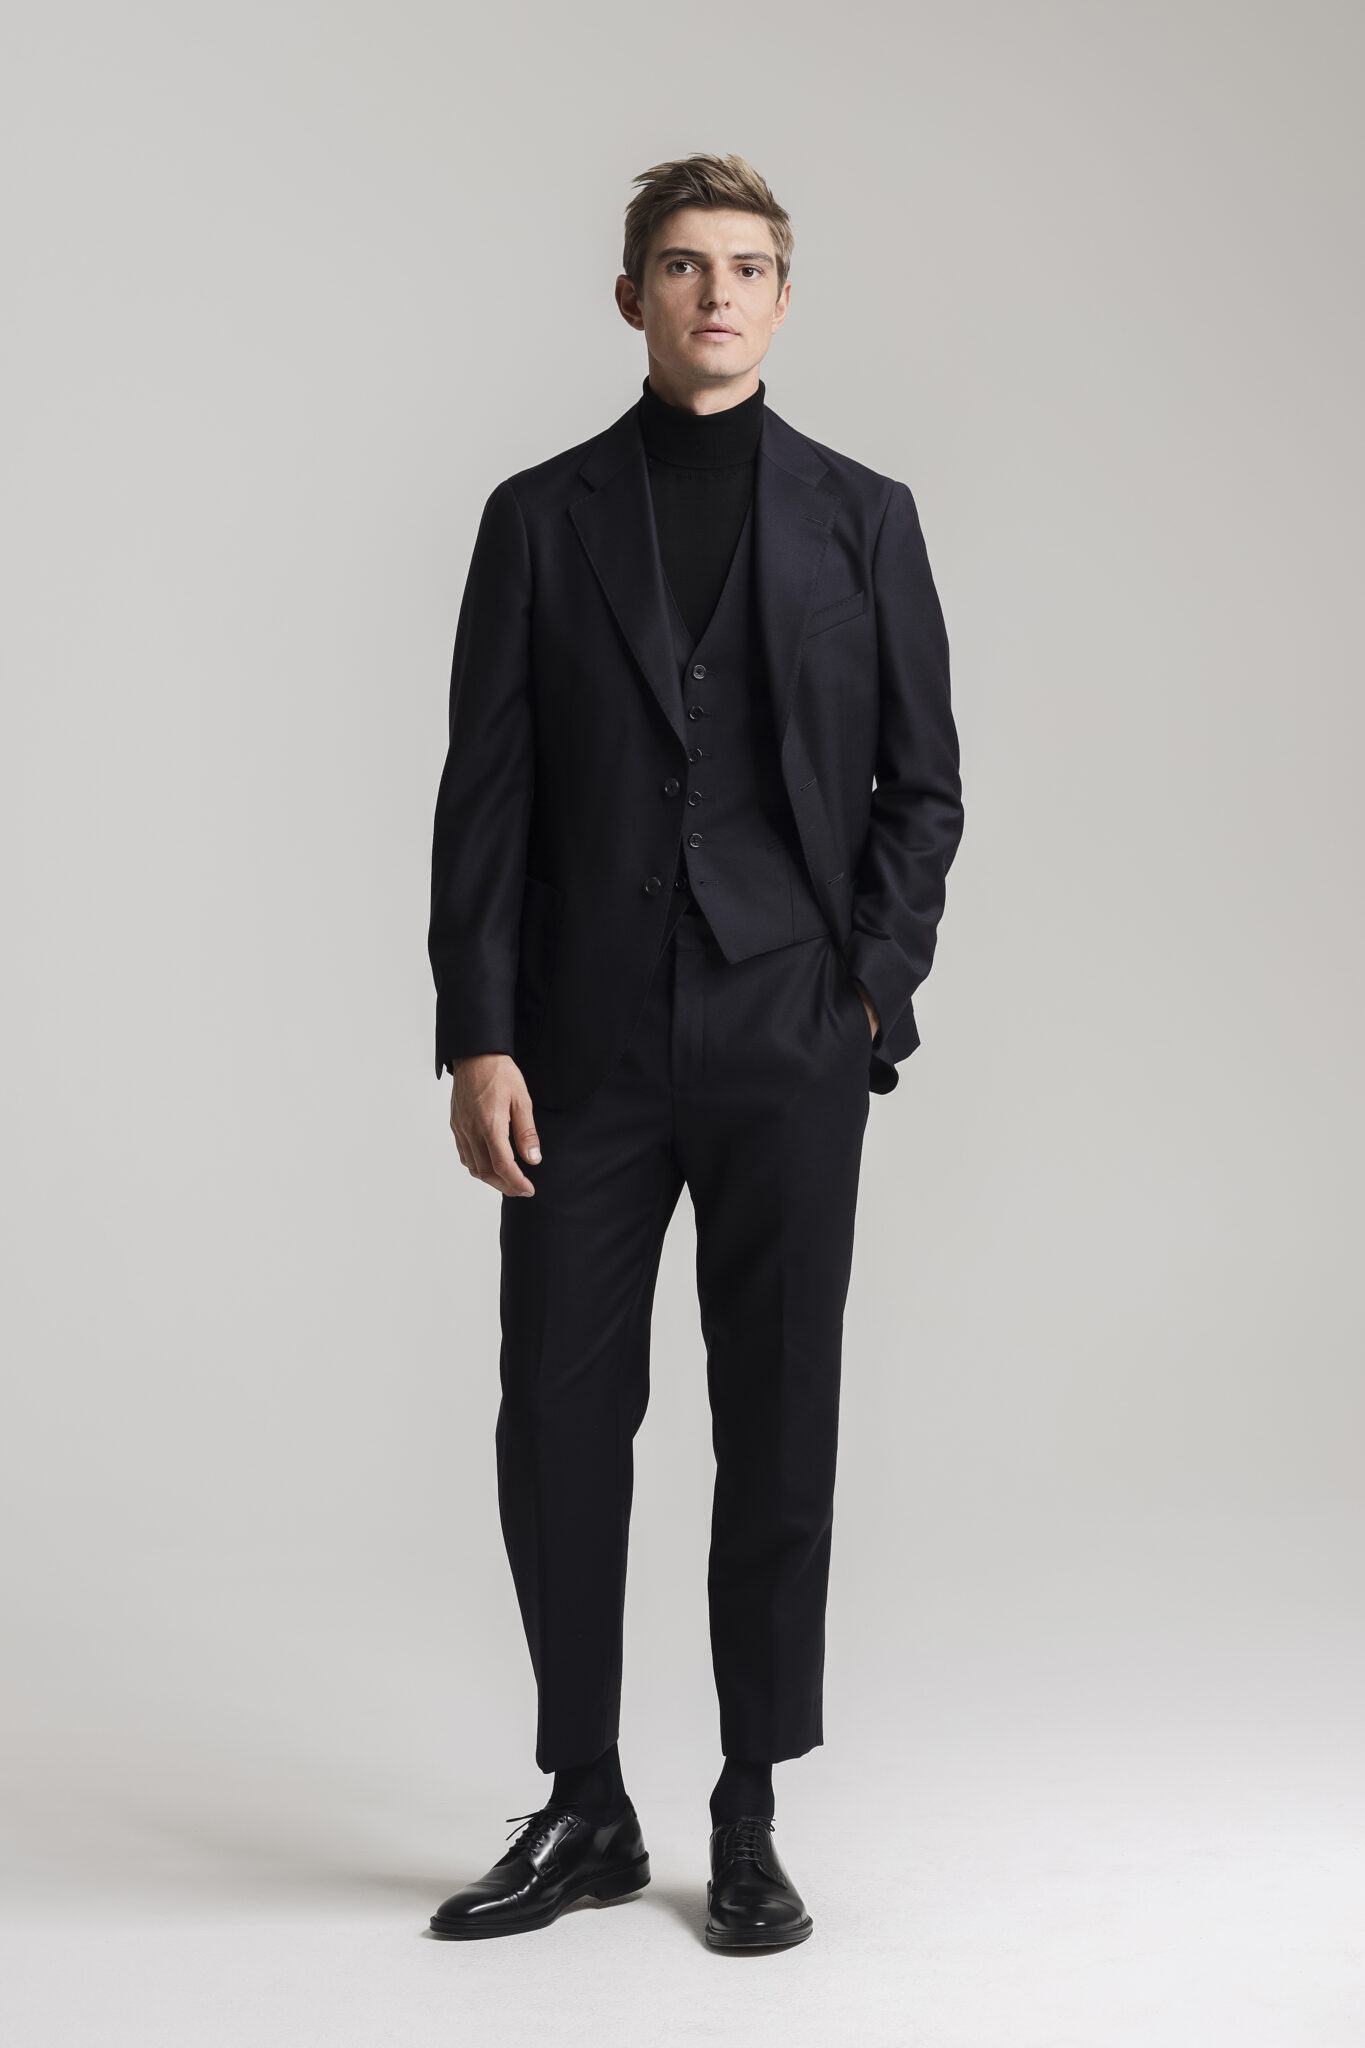 CC79B Intense Black Wool 2 Piece Suit - The Gordian Knot | Café Costume